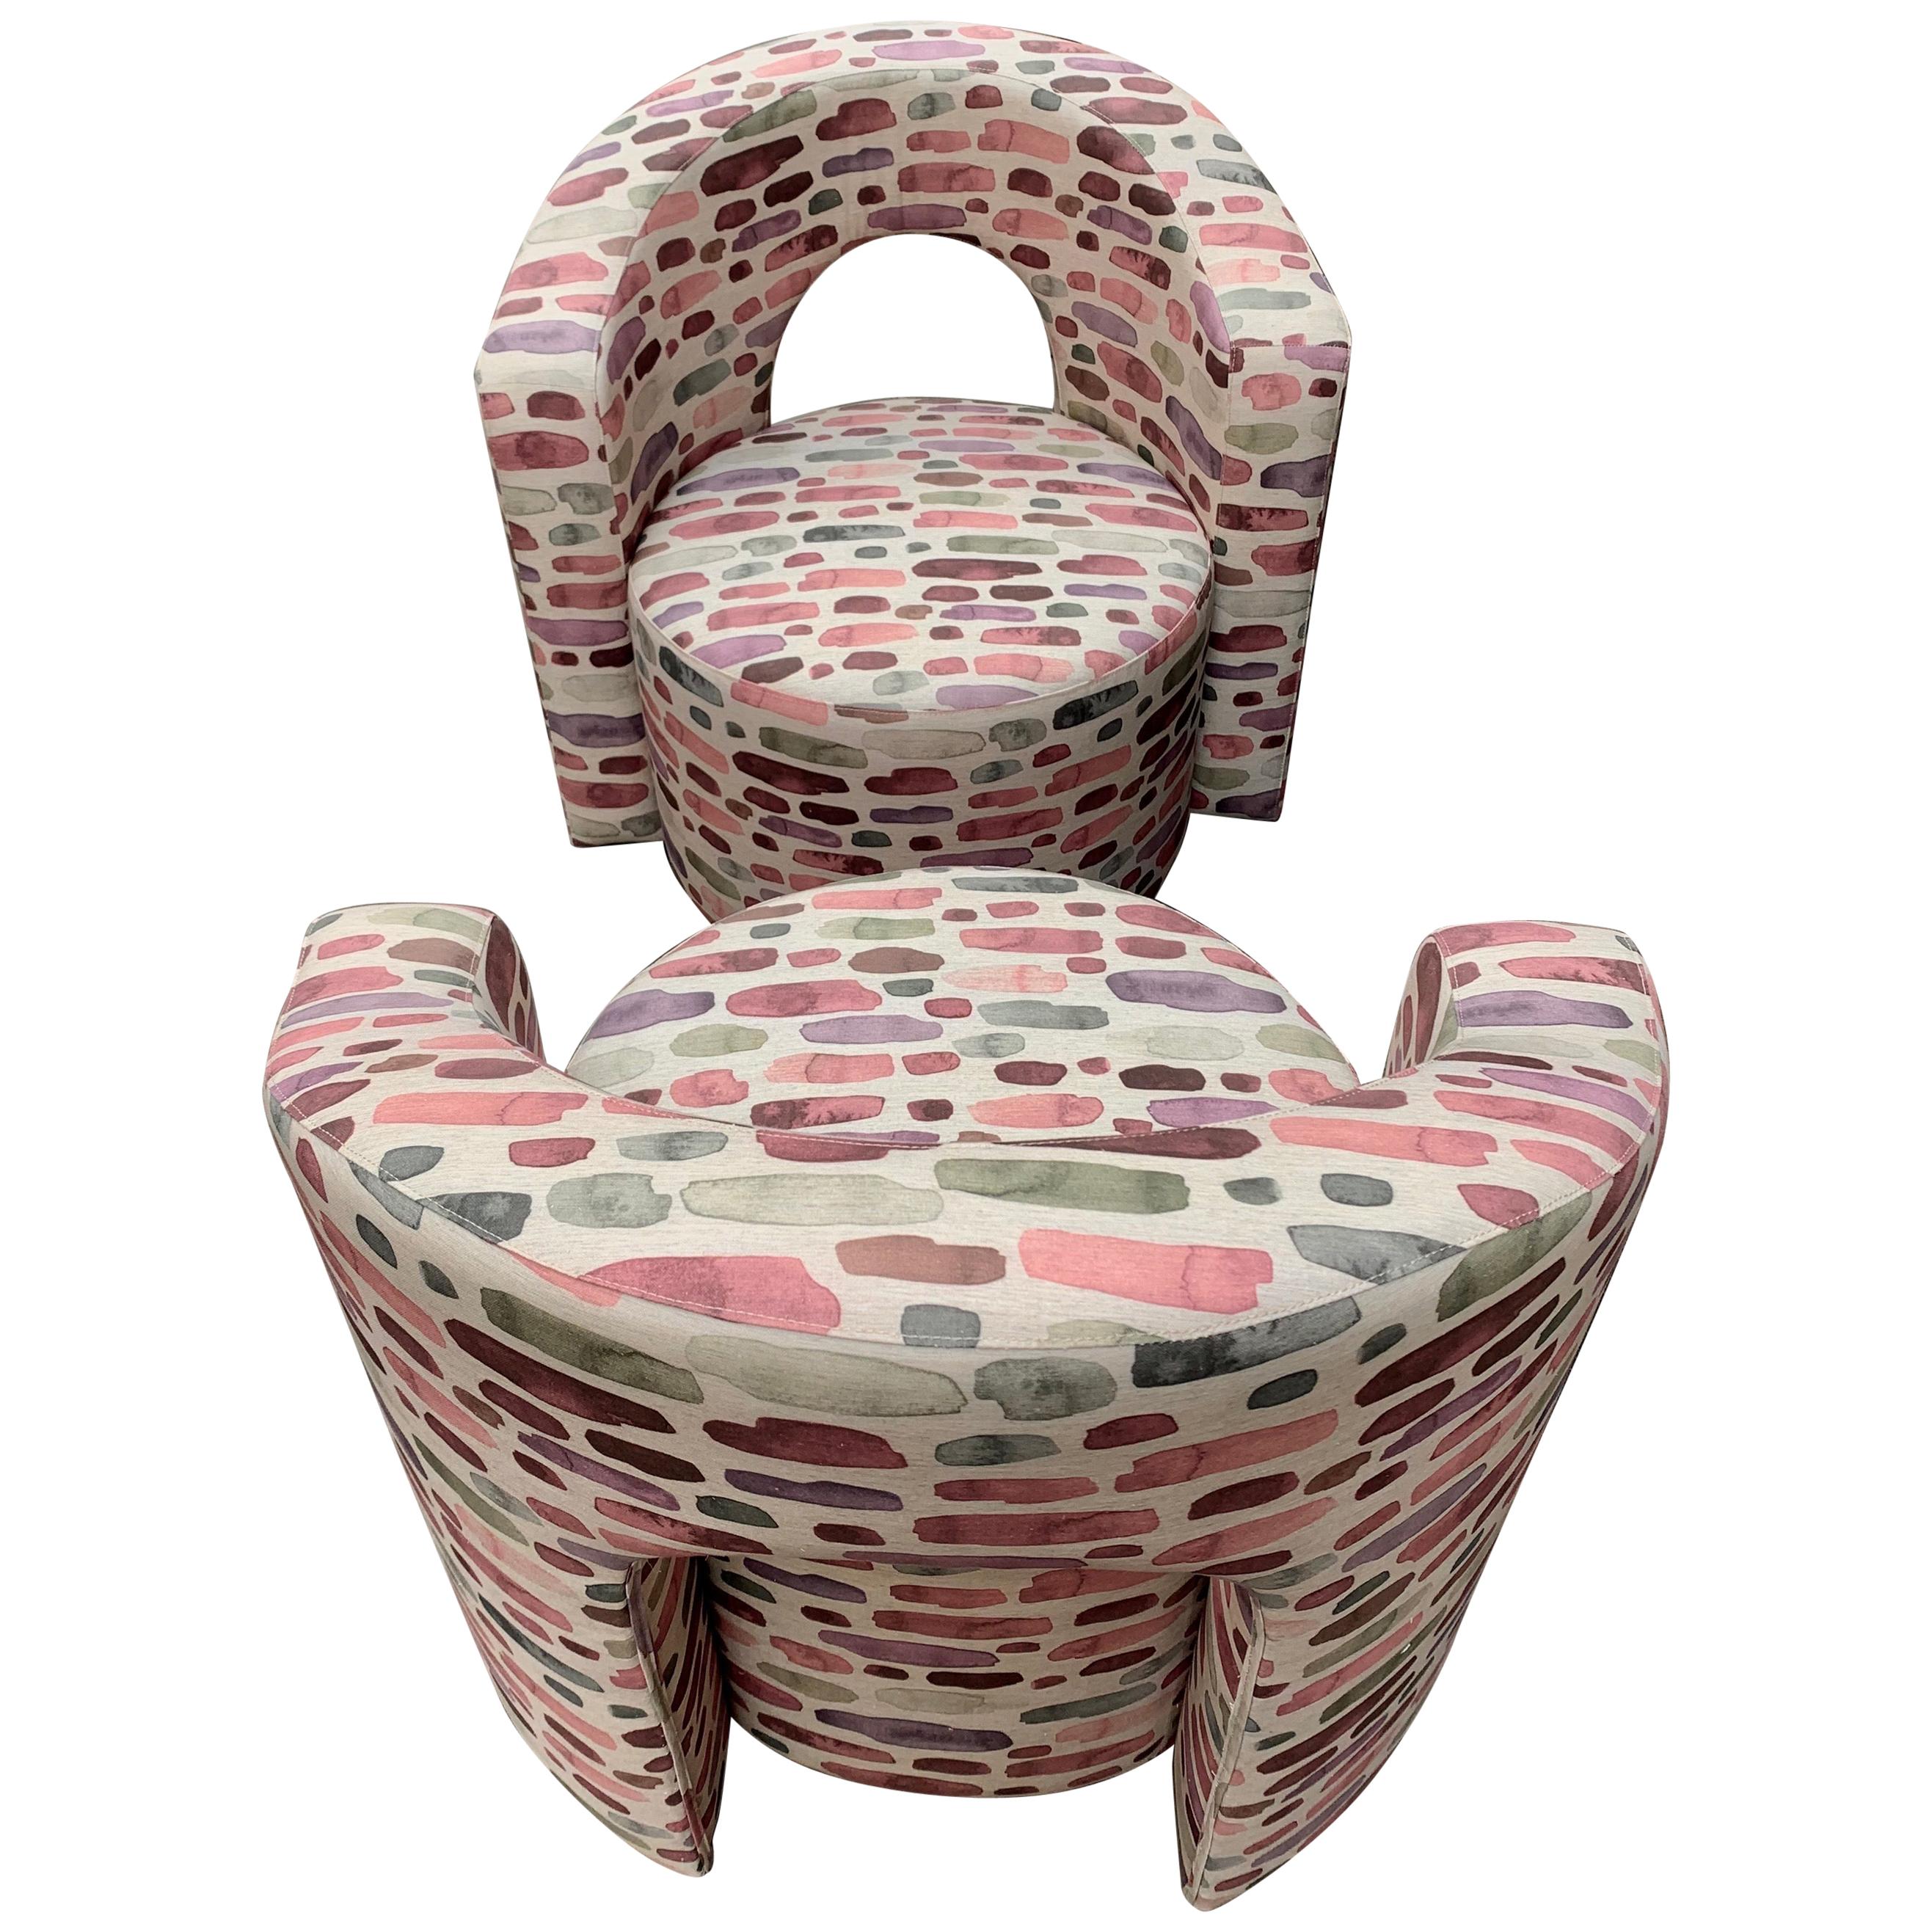 Paire de fauteuils vintage nouvellement tapissés d'un tissu de coton fantaisie.
La base du tissu est un mélange de gris avec des coups de pinceau de tons roses, violets et vert sauge en nuances irrégulières.
Parfait état vintage.